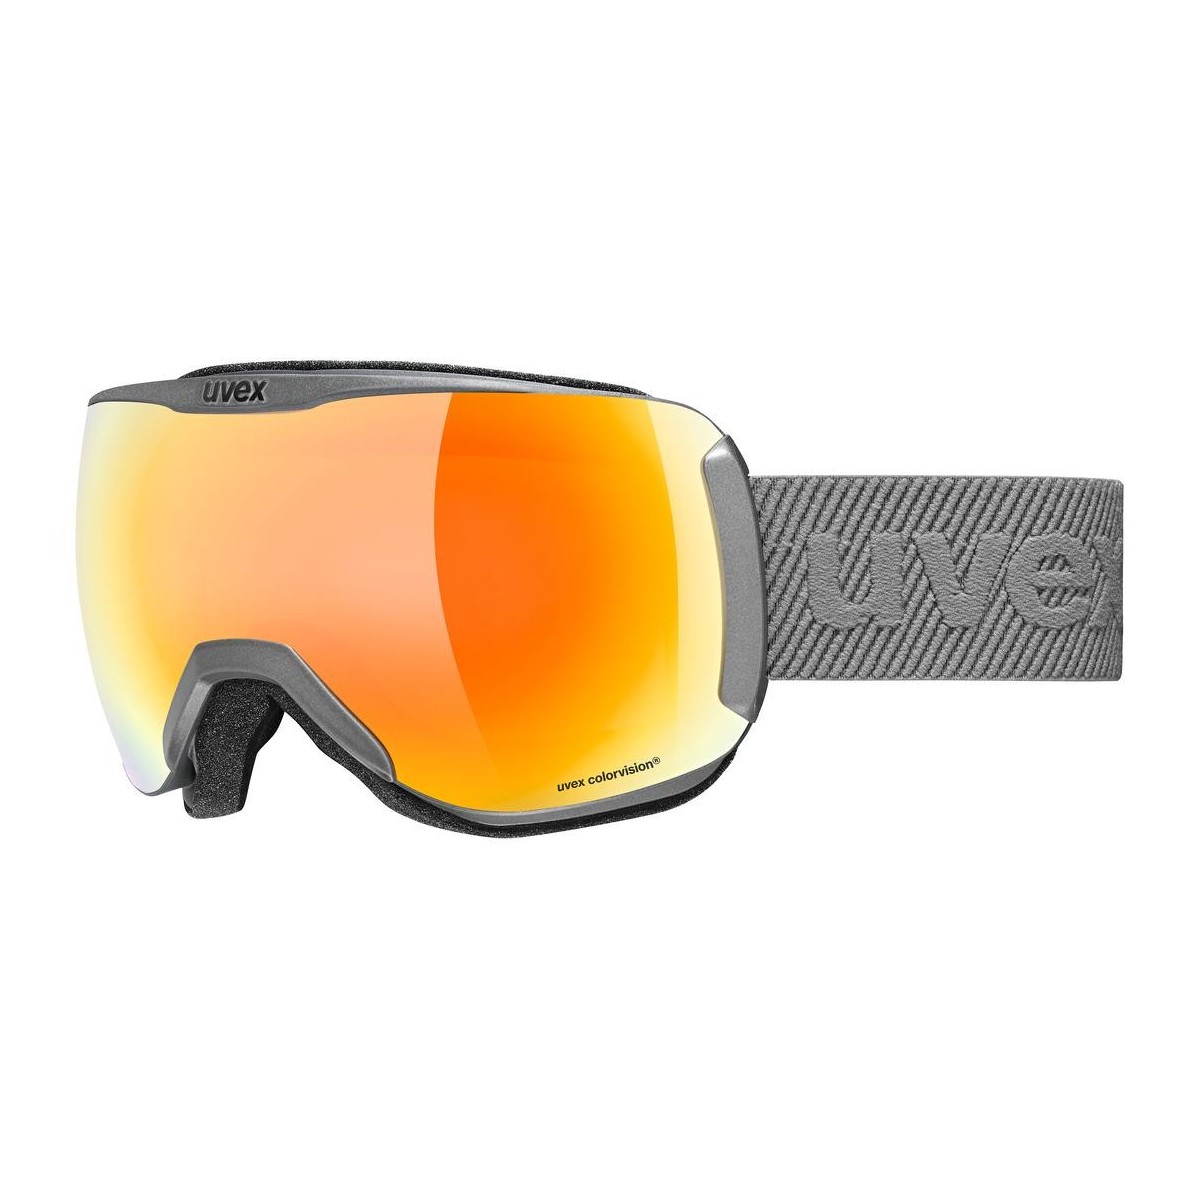 UVEX ski goggles DOWNHILL 2100 CV SL